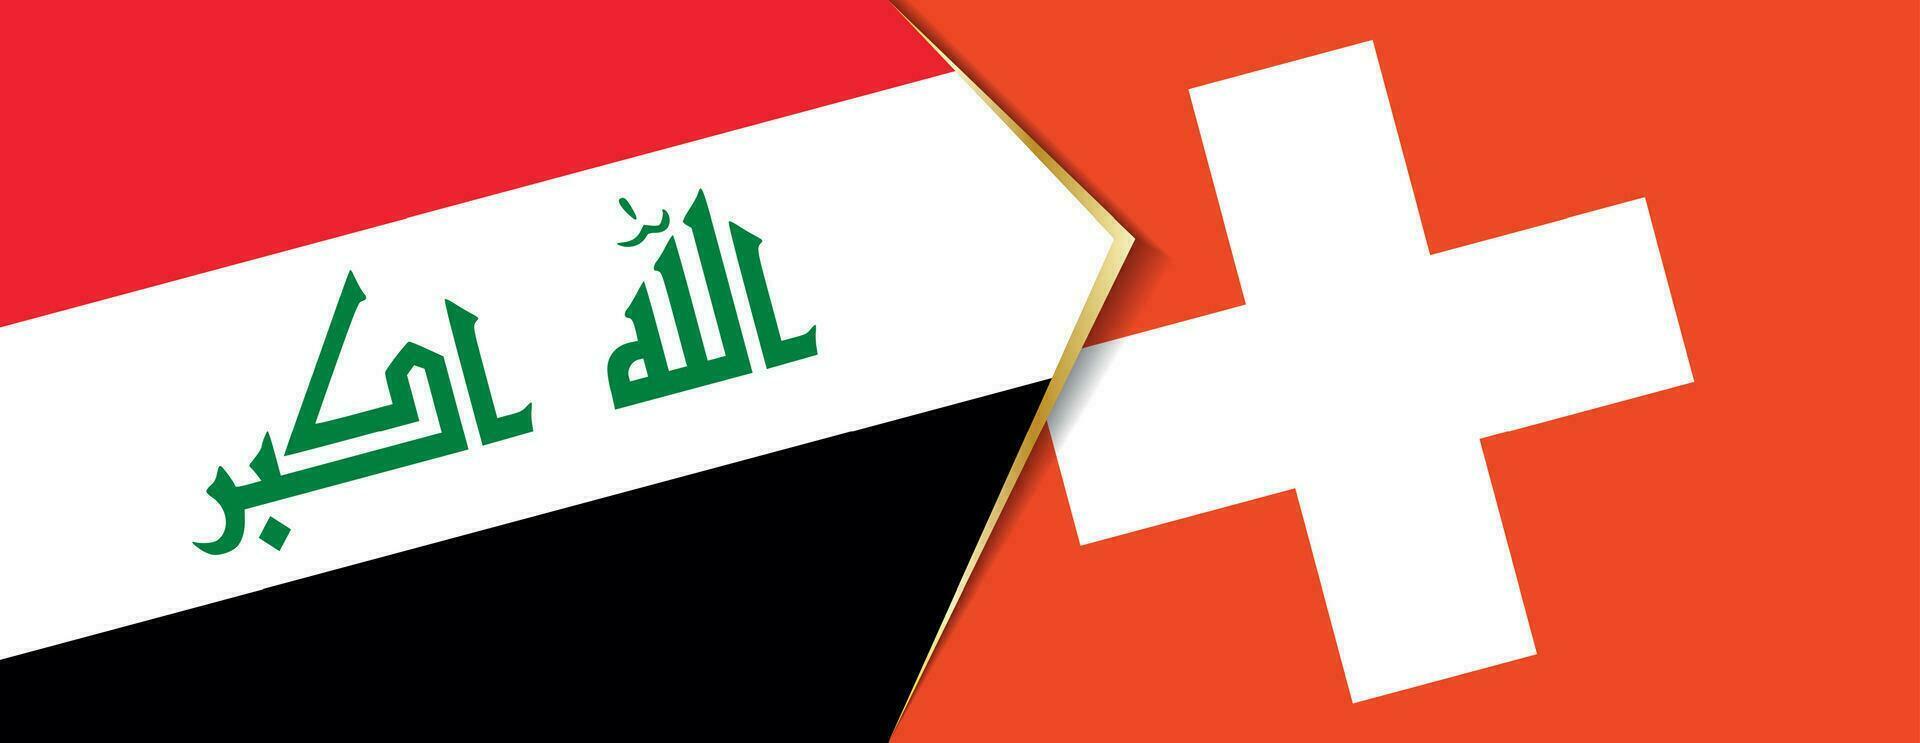 Iraque e Suíça bandeiras, dois vetor bandeiras.